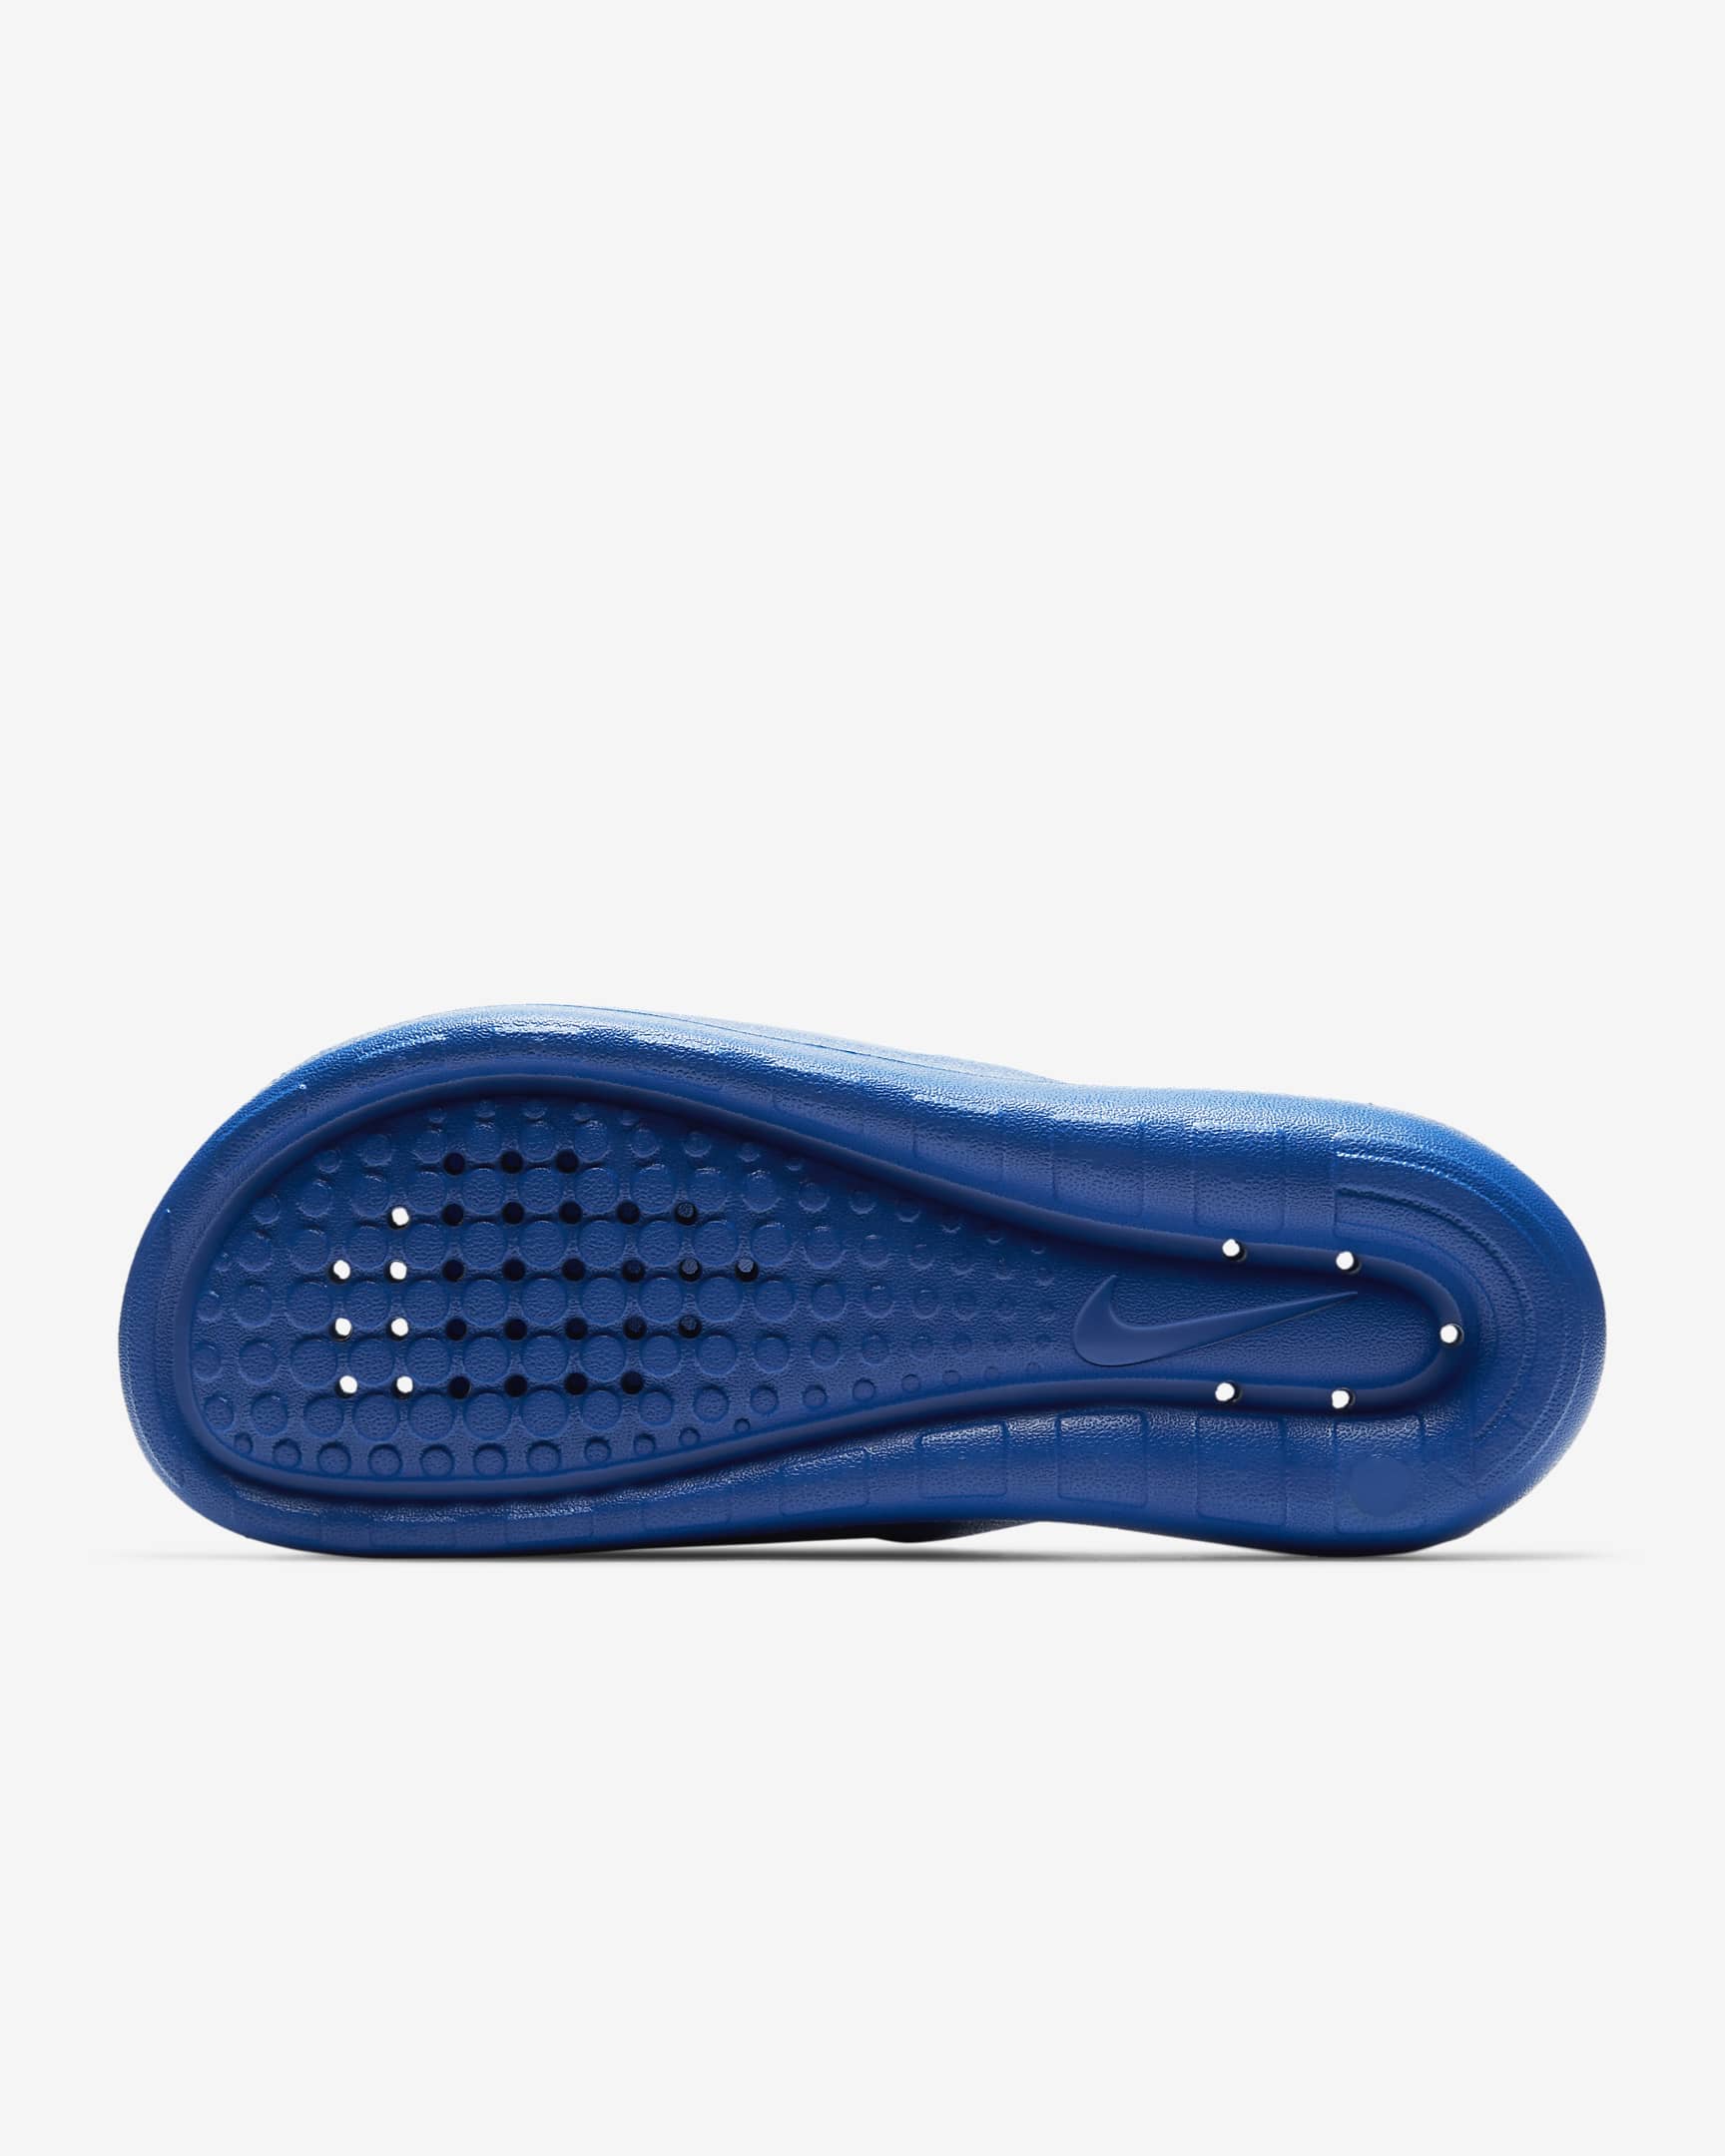 Nike Victori One Erkek Mavi Günlük Terlik (CZ5478-401)